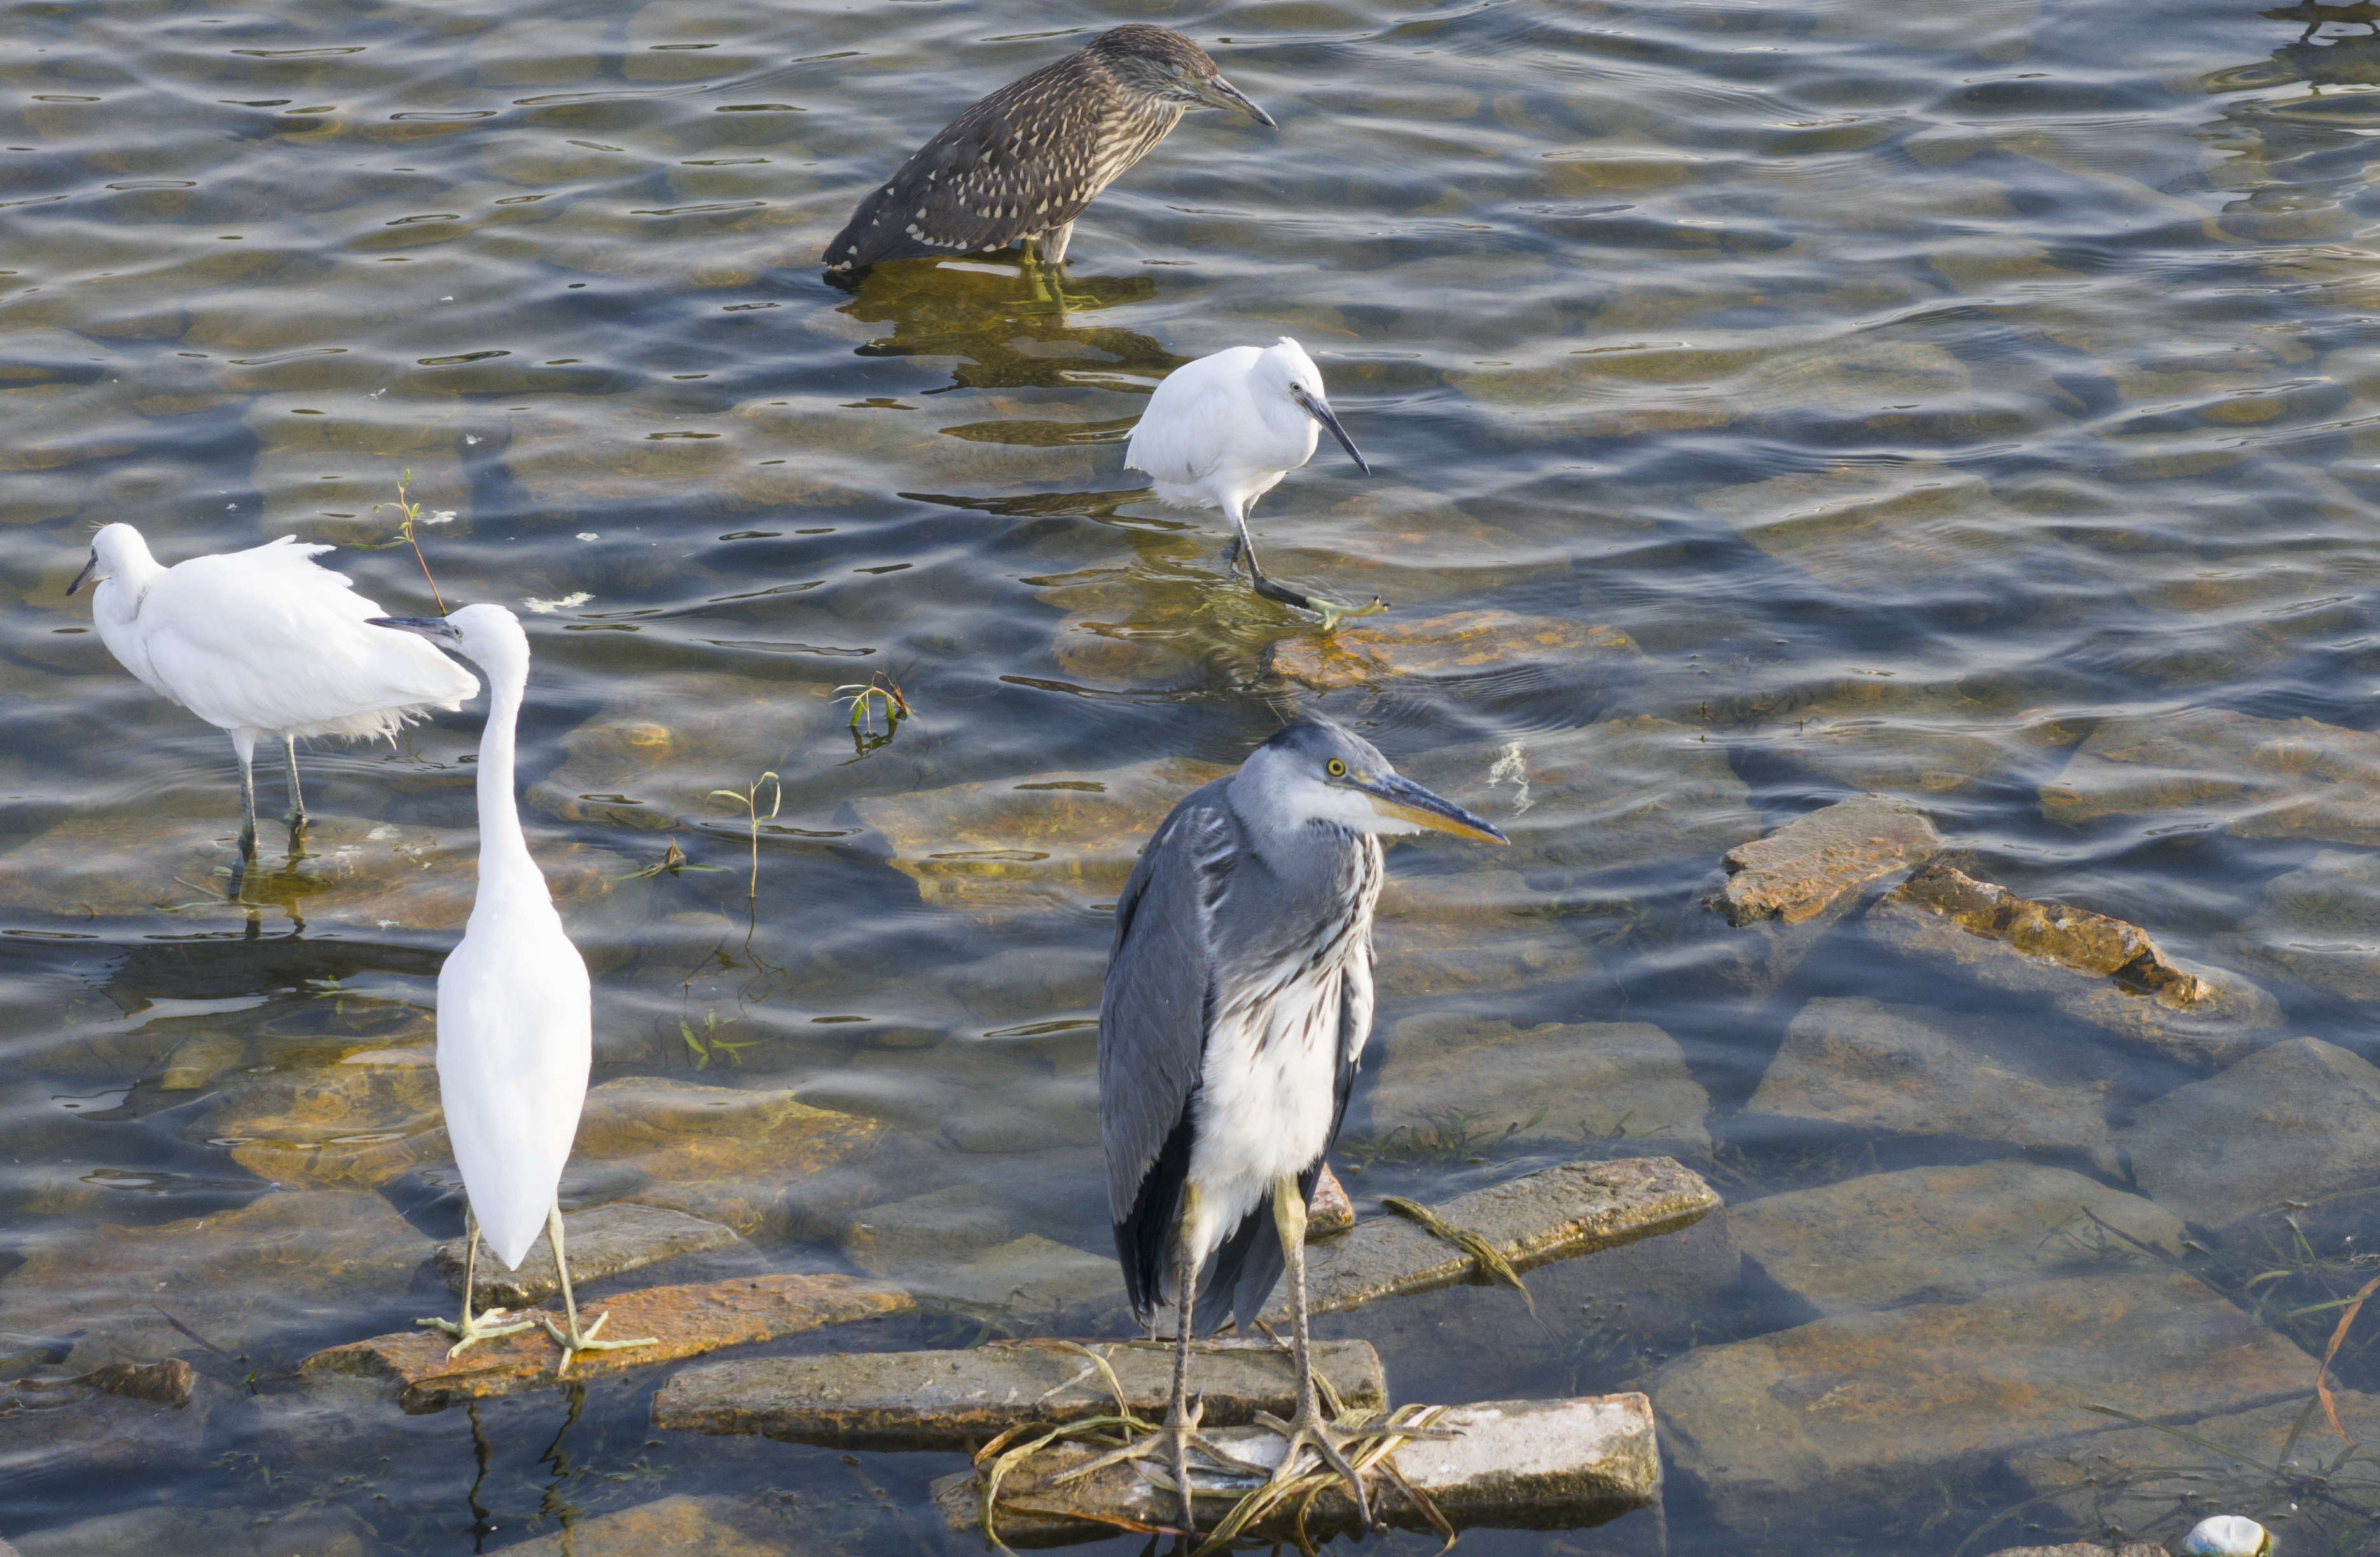 清淤工作结束，龙亭湖迎来蓄水。大批鸟类再次抵达景区，在水中觅食、嬉戏，仿佛湖中精灵。全媒体记者袁洋6月26日摄